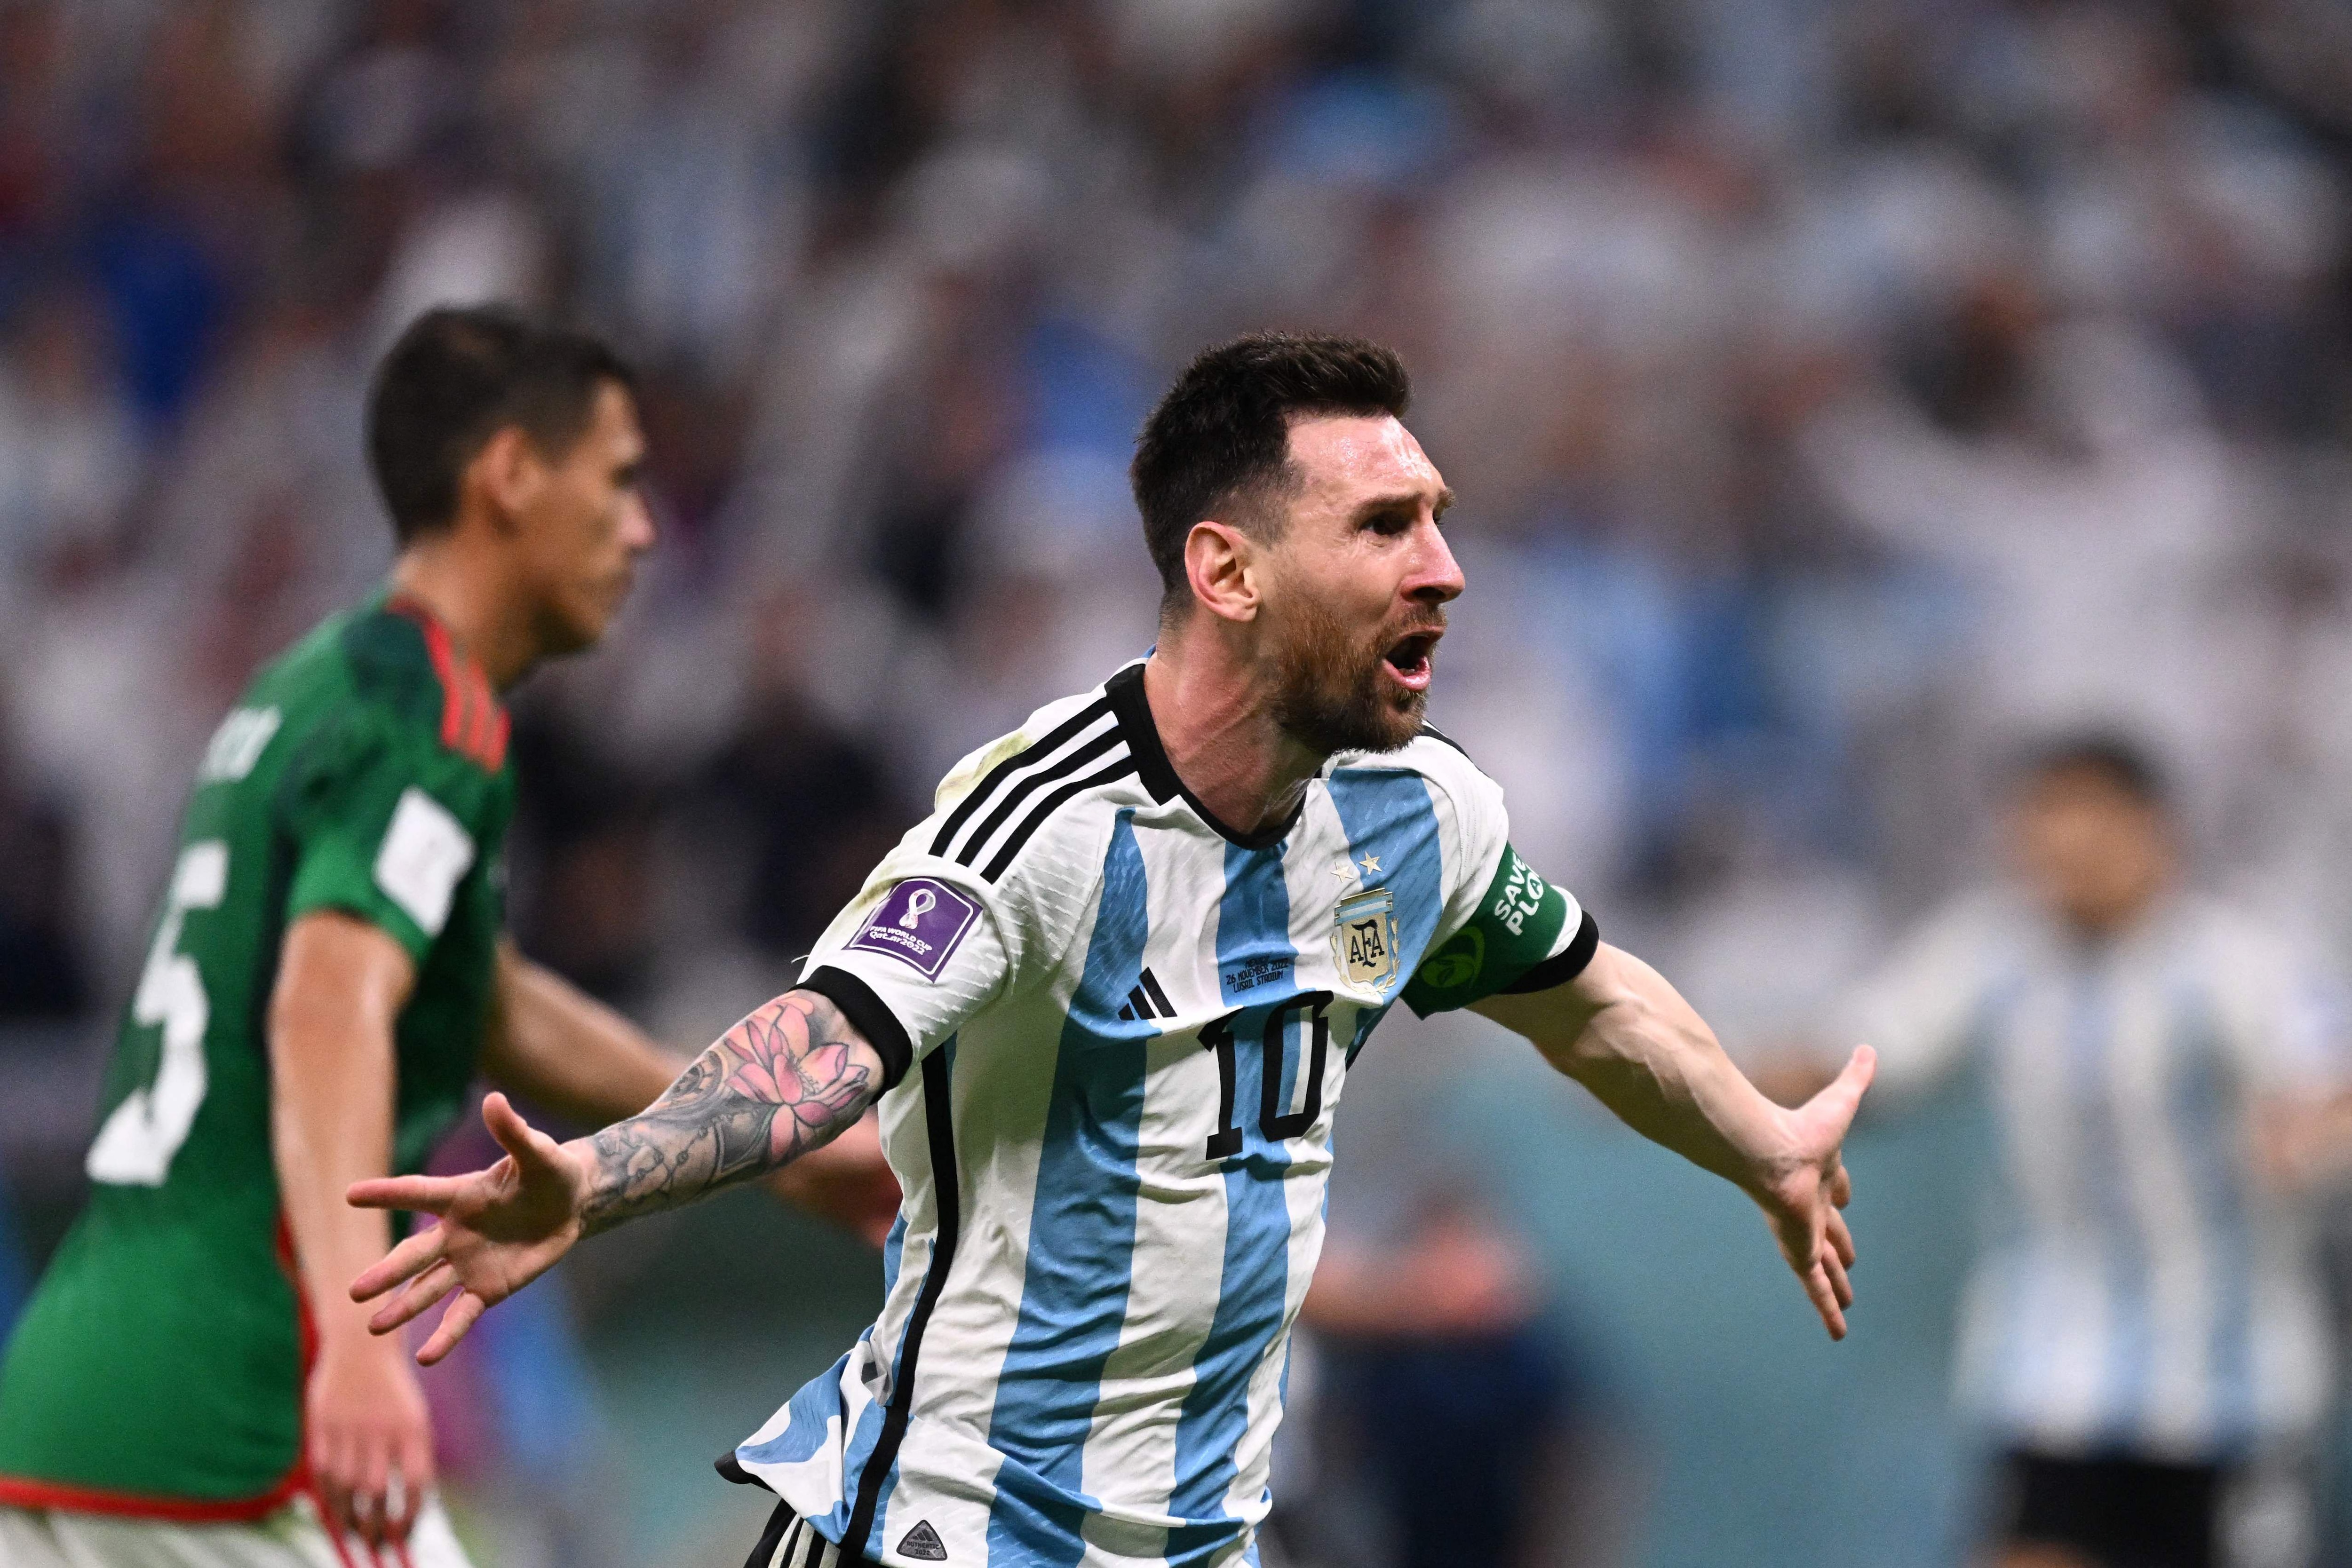 Lionel Messi quizás merece una Copa del Mundo, pero Argentina no ha sido capaz y sus Mundiales, incluyendo al 10, han estado llenos de altibajos.